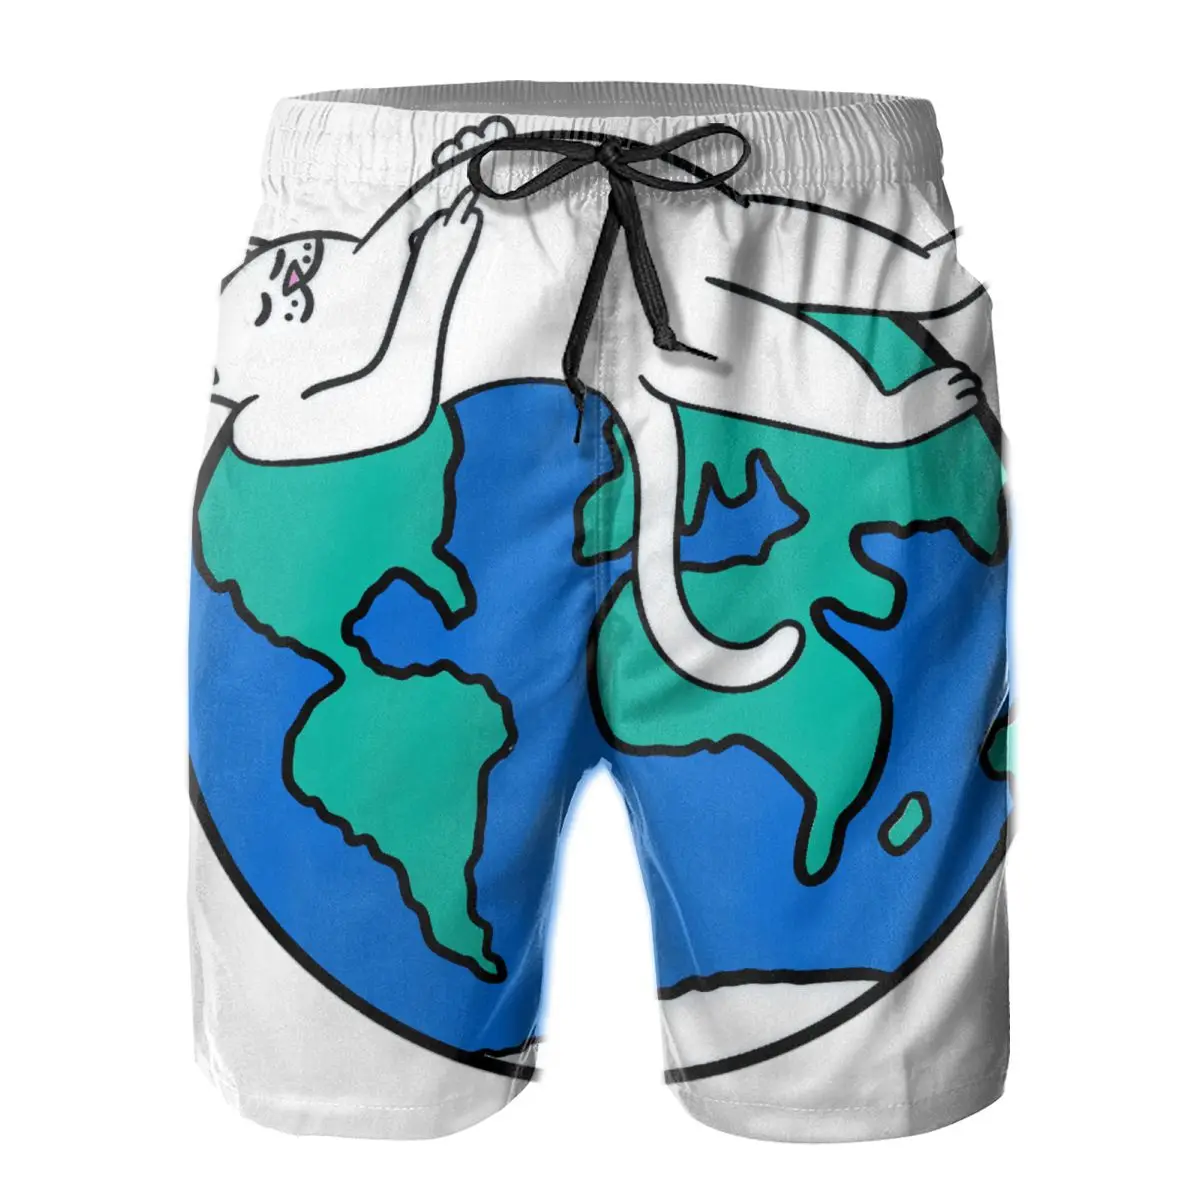 

Мужские быстросохнущие плавки R.Ip N-DiP, пляжные шорты в цветную полоску с сетчатой подкладкой